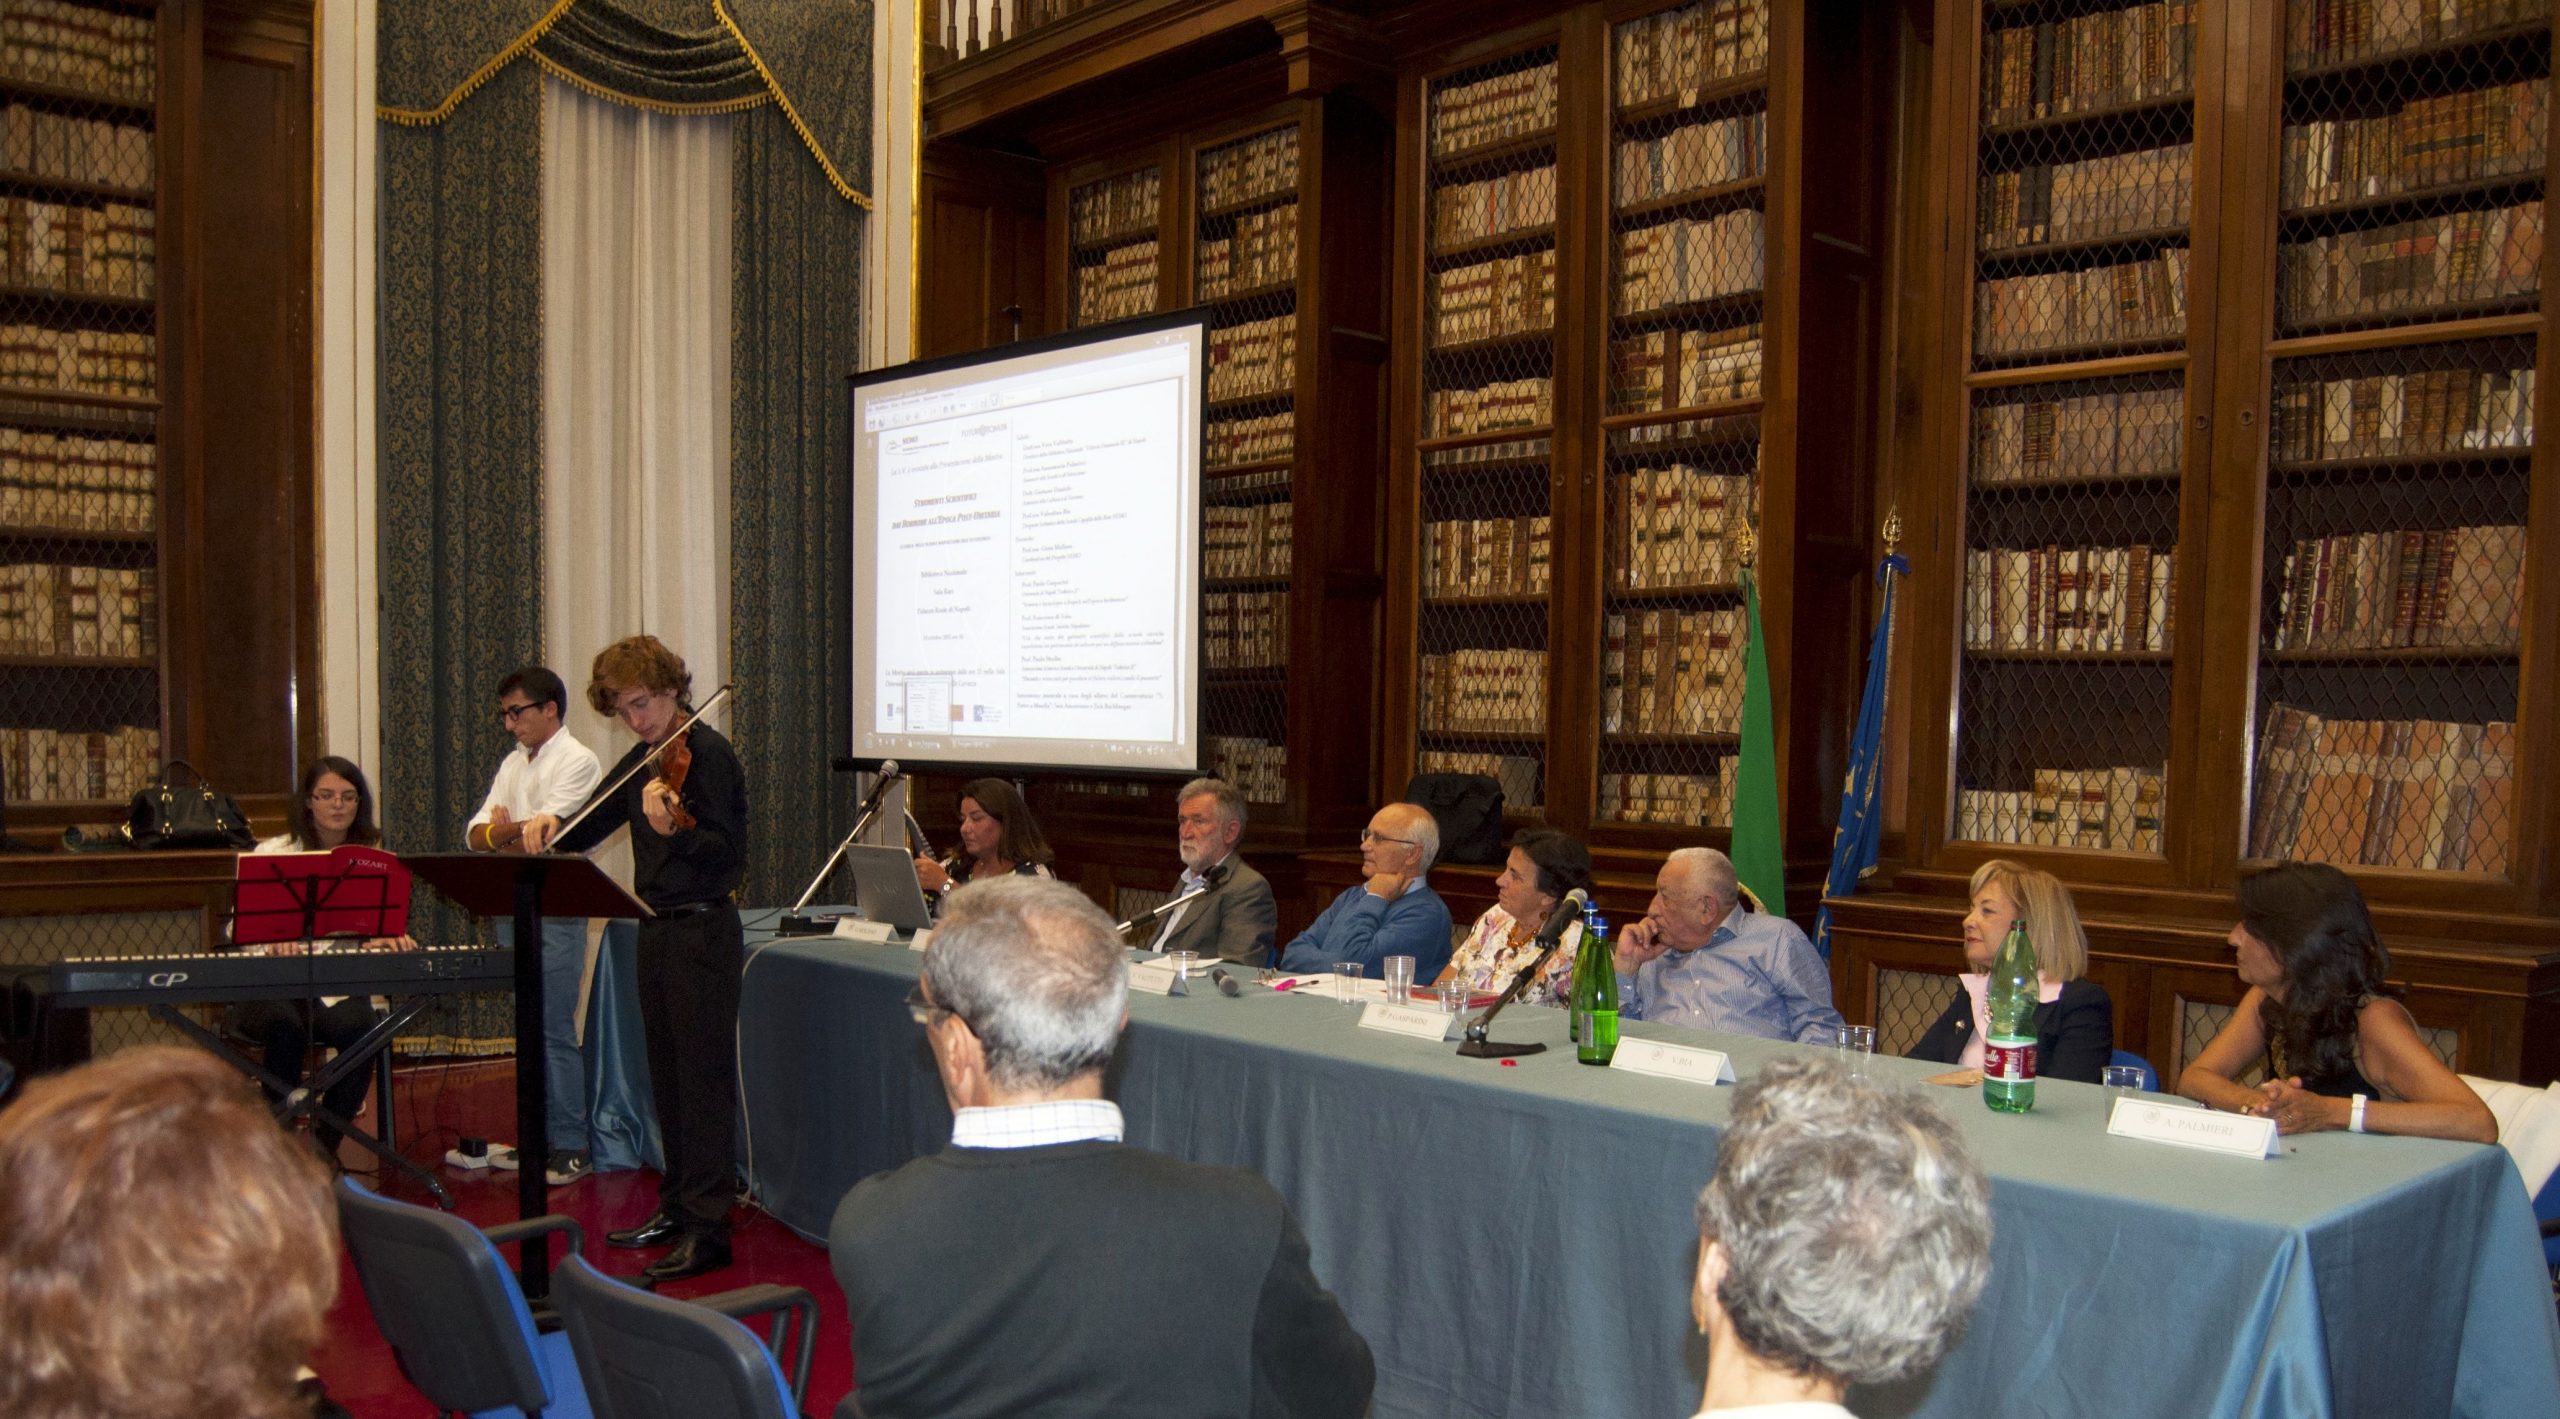 Napoli progetto NEMO: docenti e scienziati per guardare al Futuro valorizzando il passato